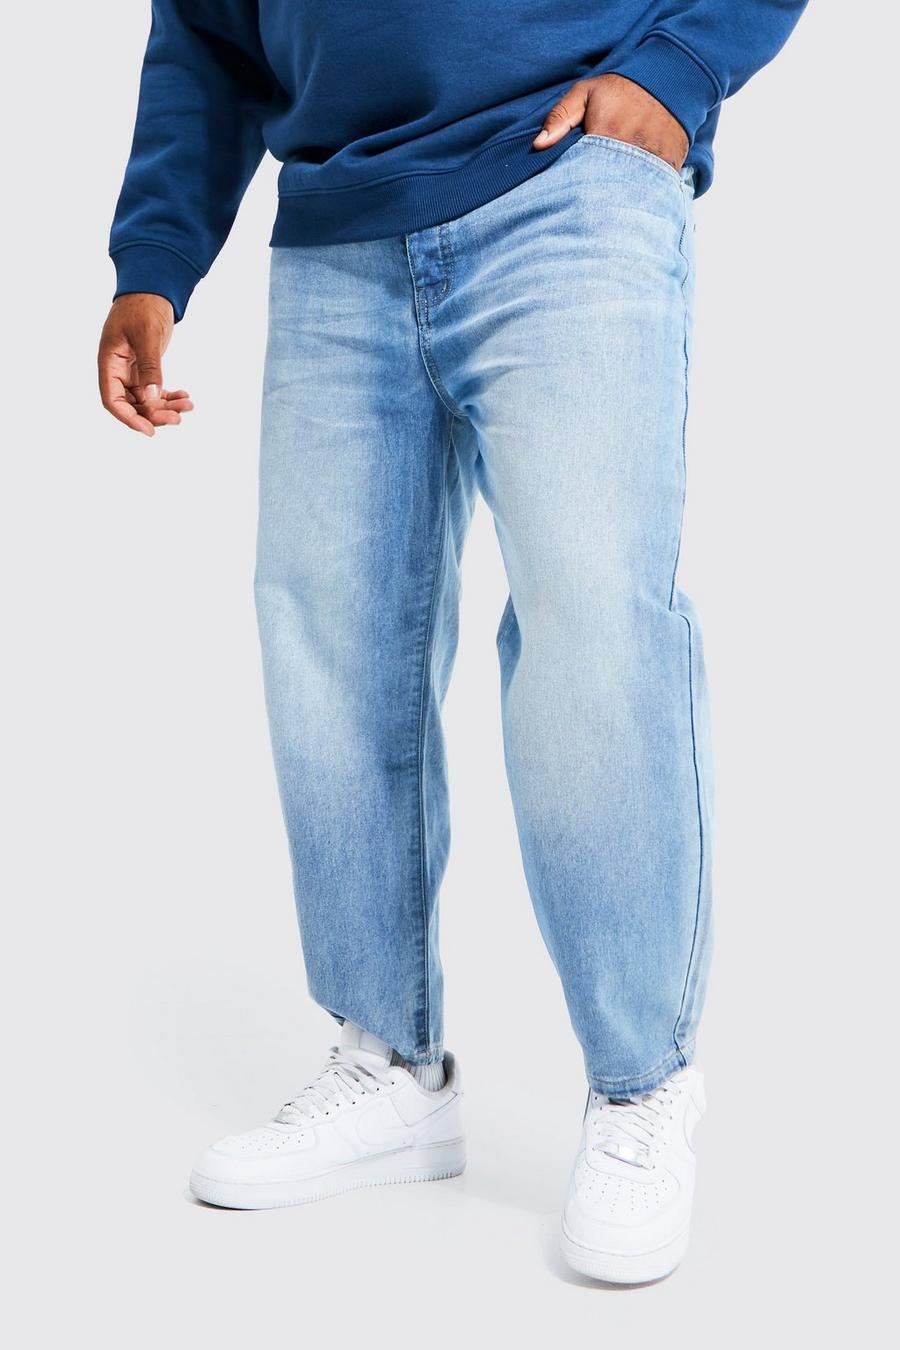 כחול ביניים ג'ינס קרופ קשיח בגזרת קרסול צרה, מידות גדולות image number 1